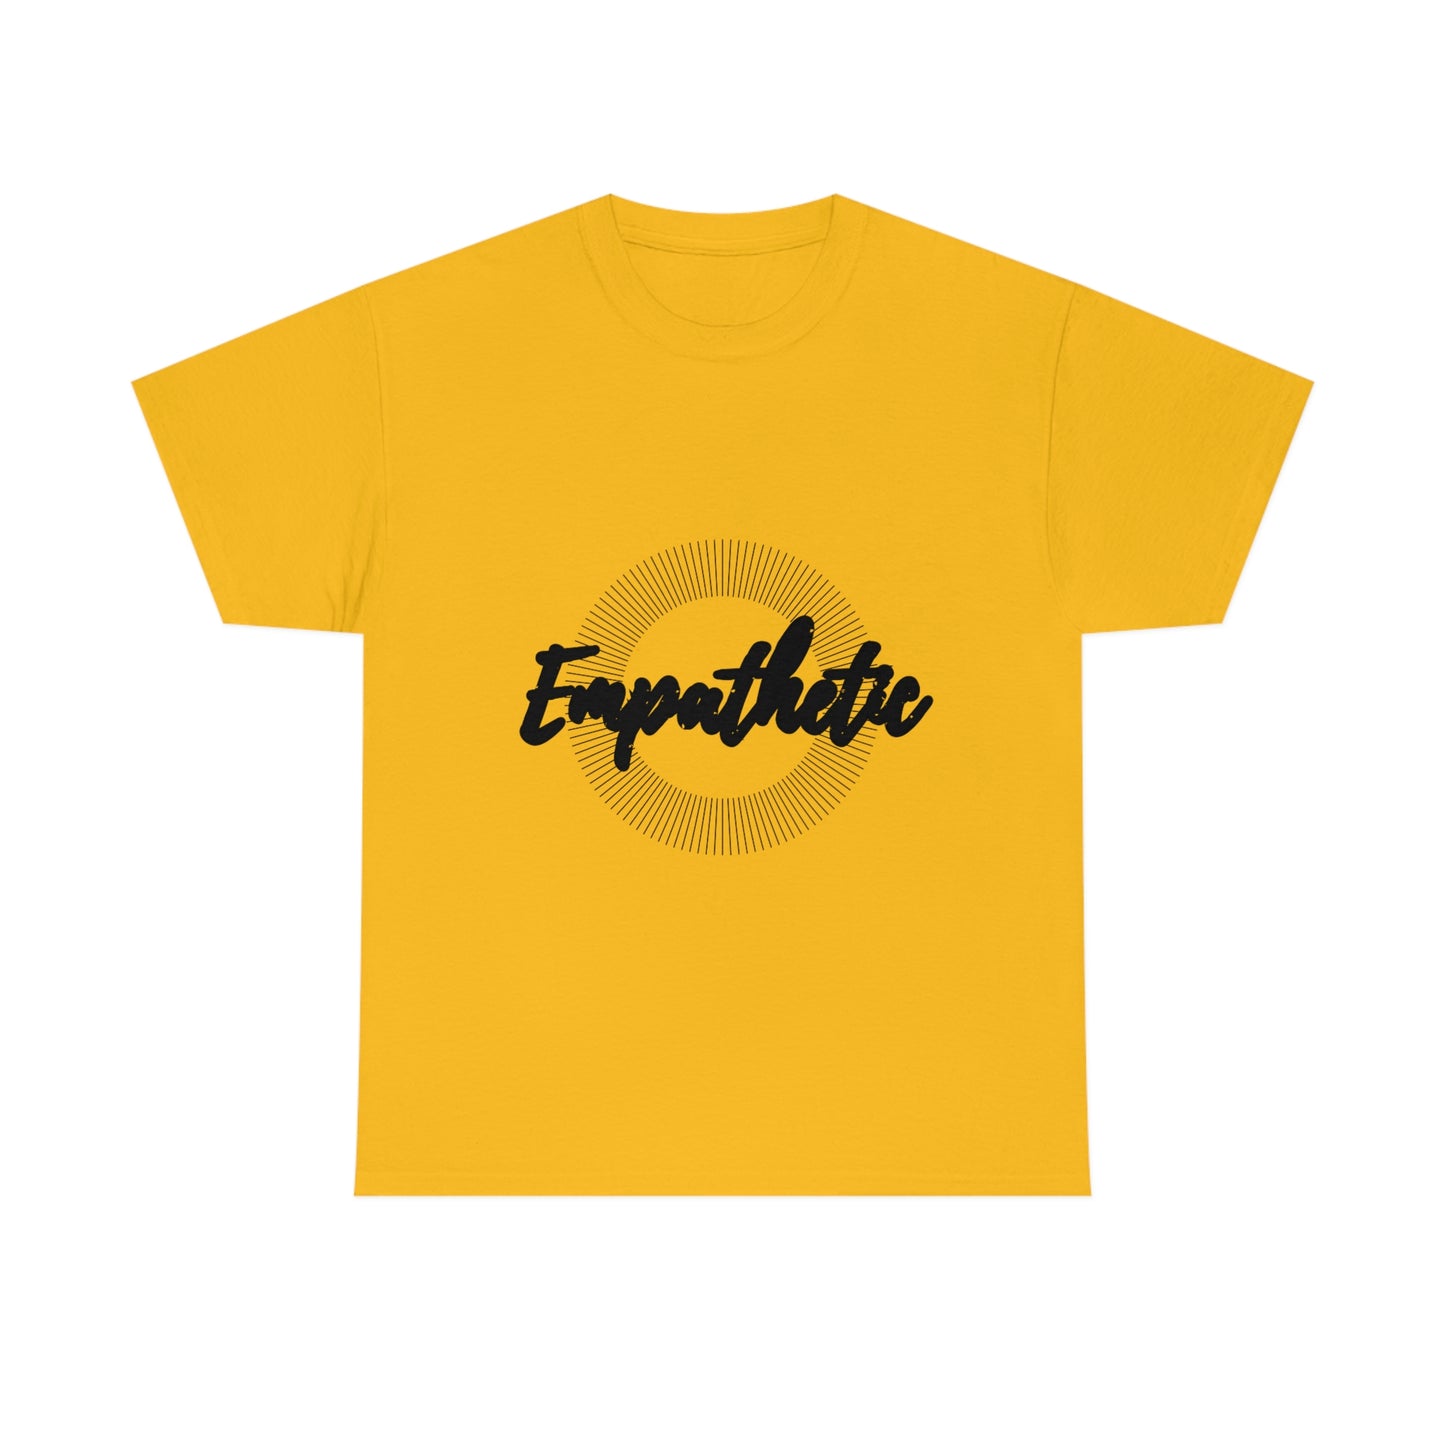 Empathetic T-shirt